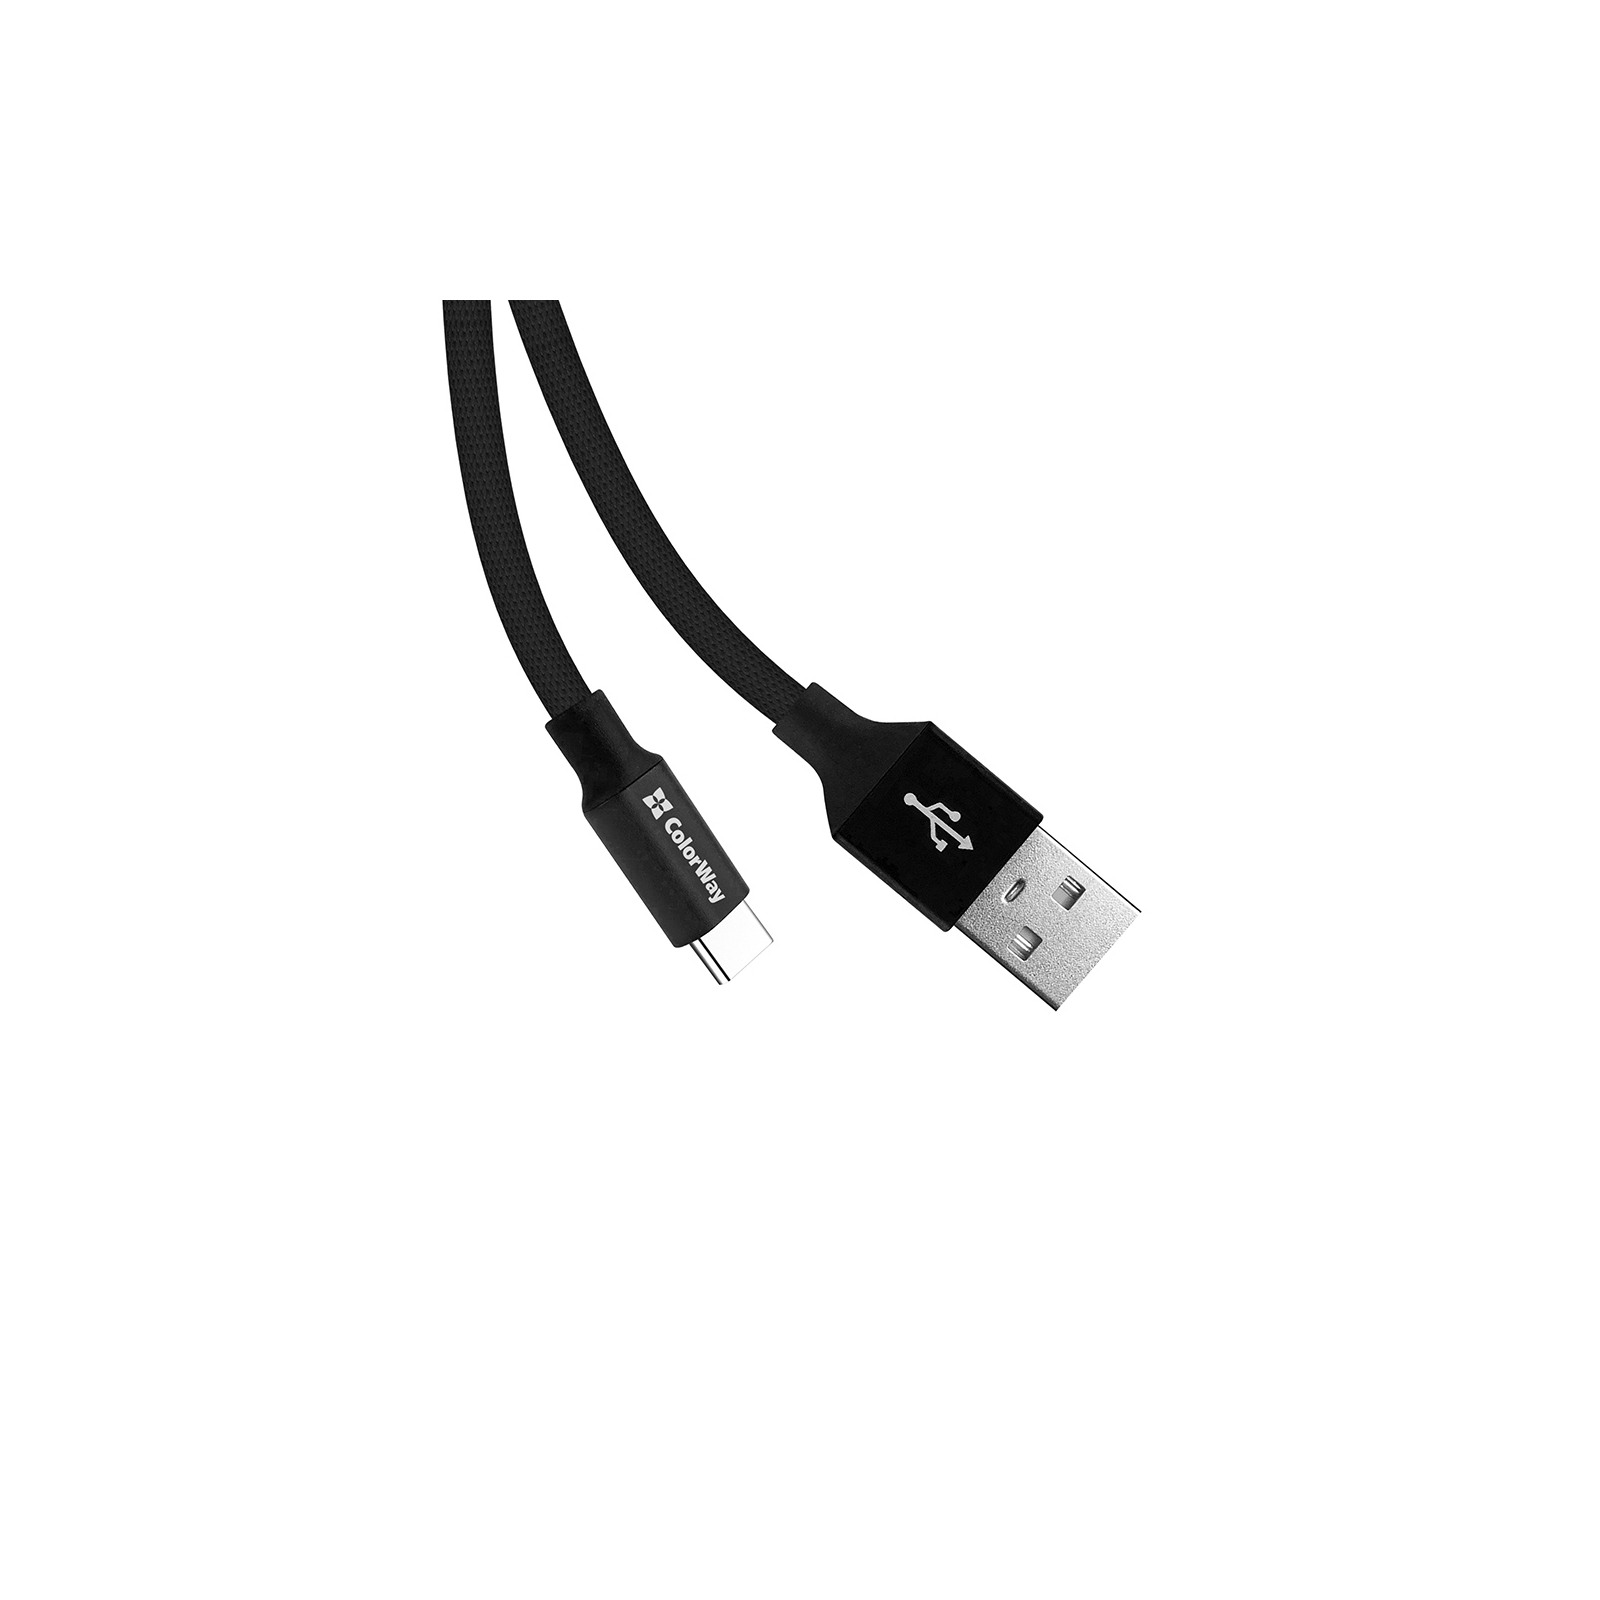 Дата кабель USB 2.0 AM to Type-C 0.25m black ColorWay (CW-CBUC048-BK) изображение 4